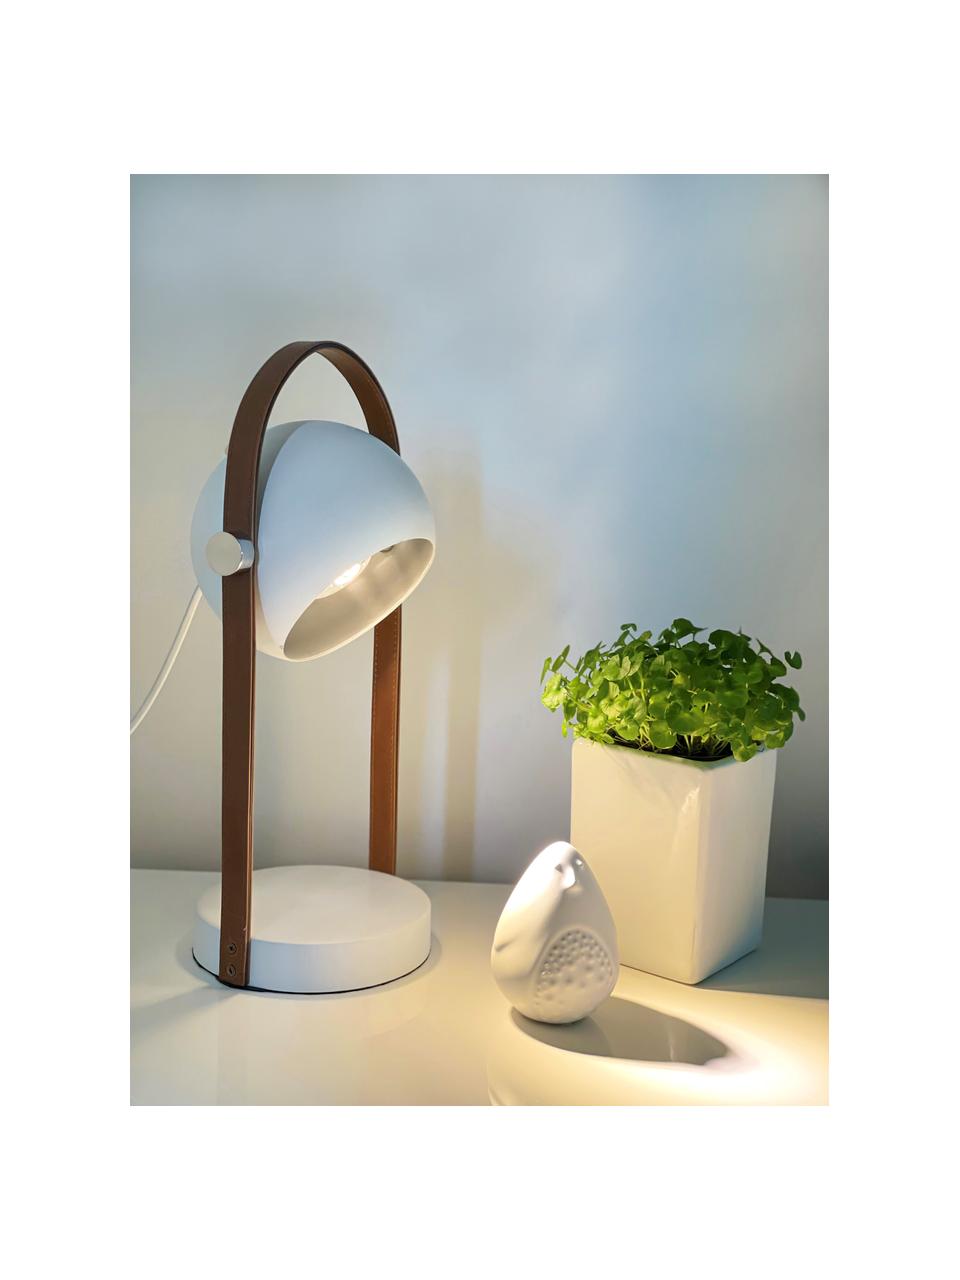 Tischlampe Bow mit Leder-Dekor, Lampenschirm: Metall, beschichtet, Lampenfuß: Metall, beschichtet, Braun, Weiß, B 15 x H 38 cm